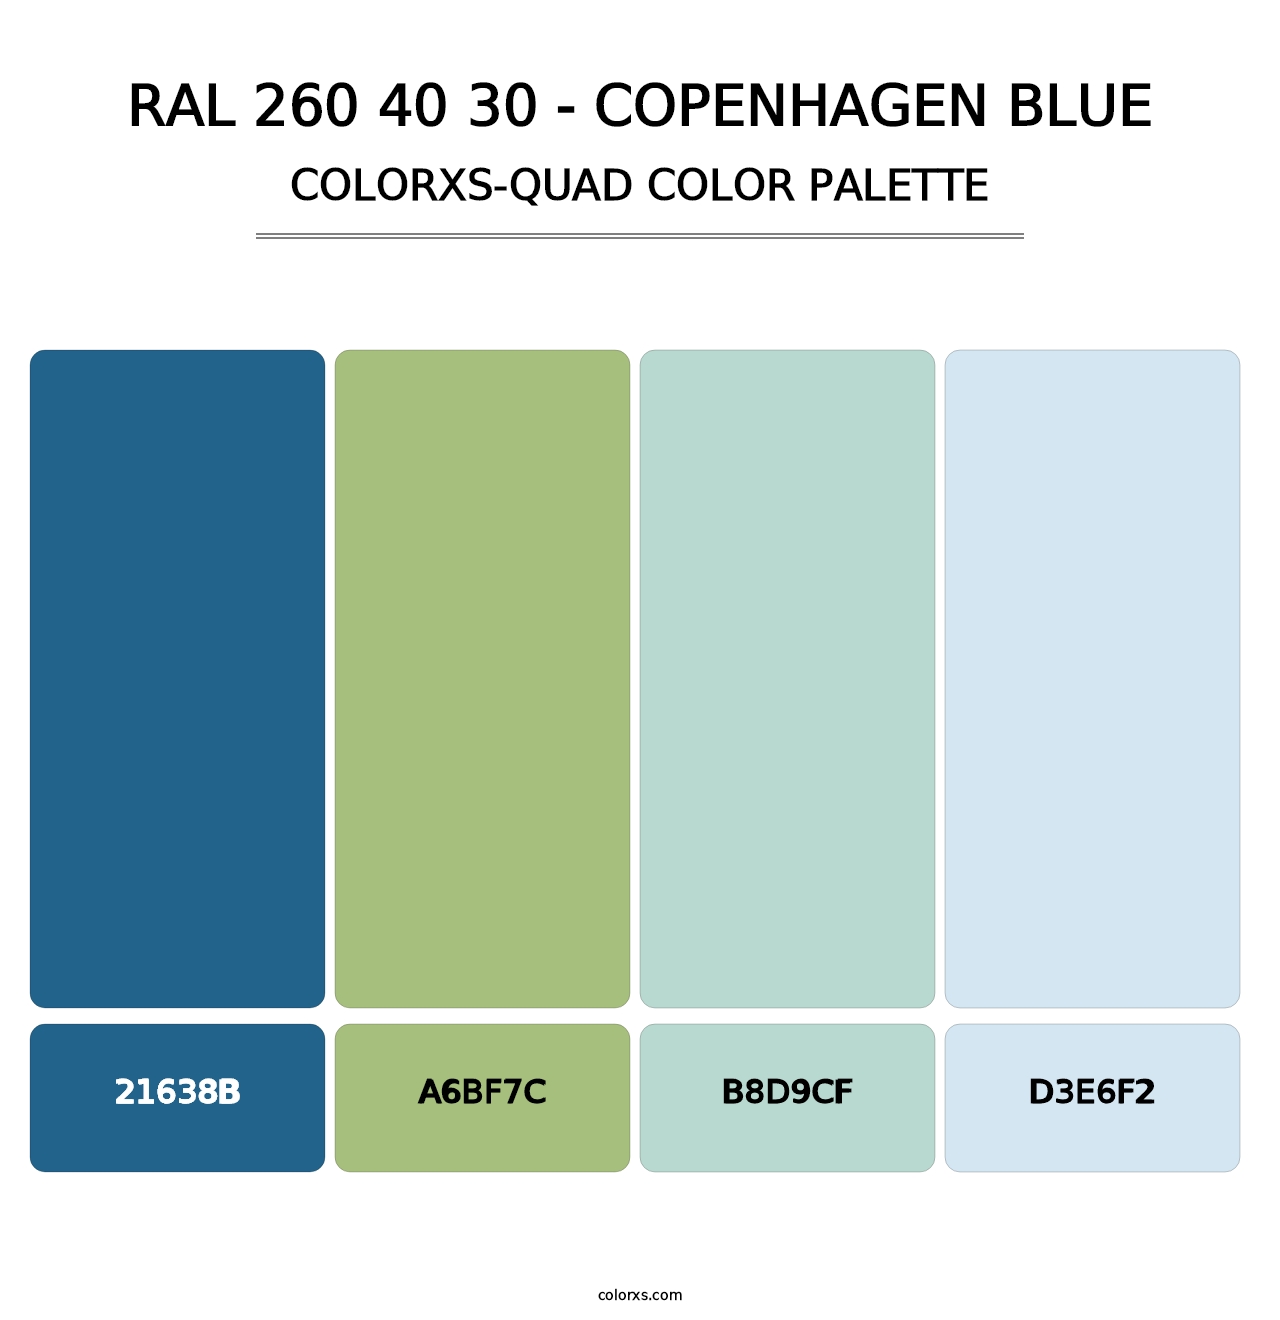 RAL 260 40 30 - Copenhagen Blue - Colorxs Quad Palette